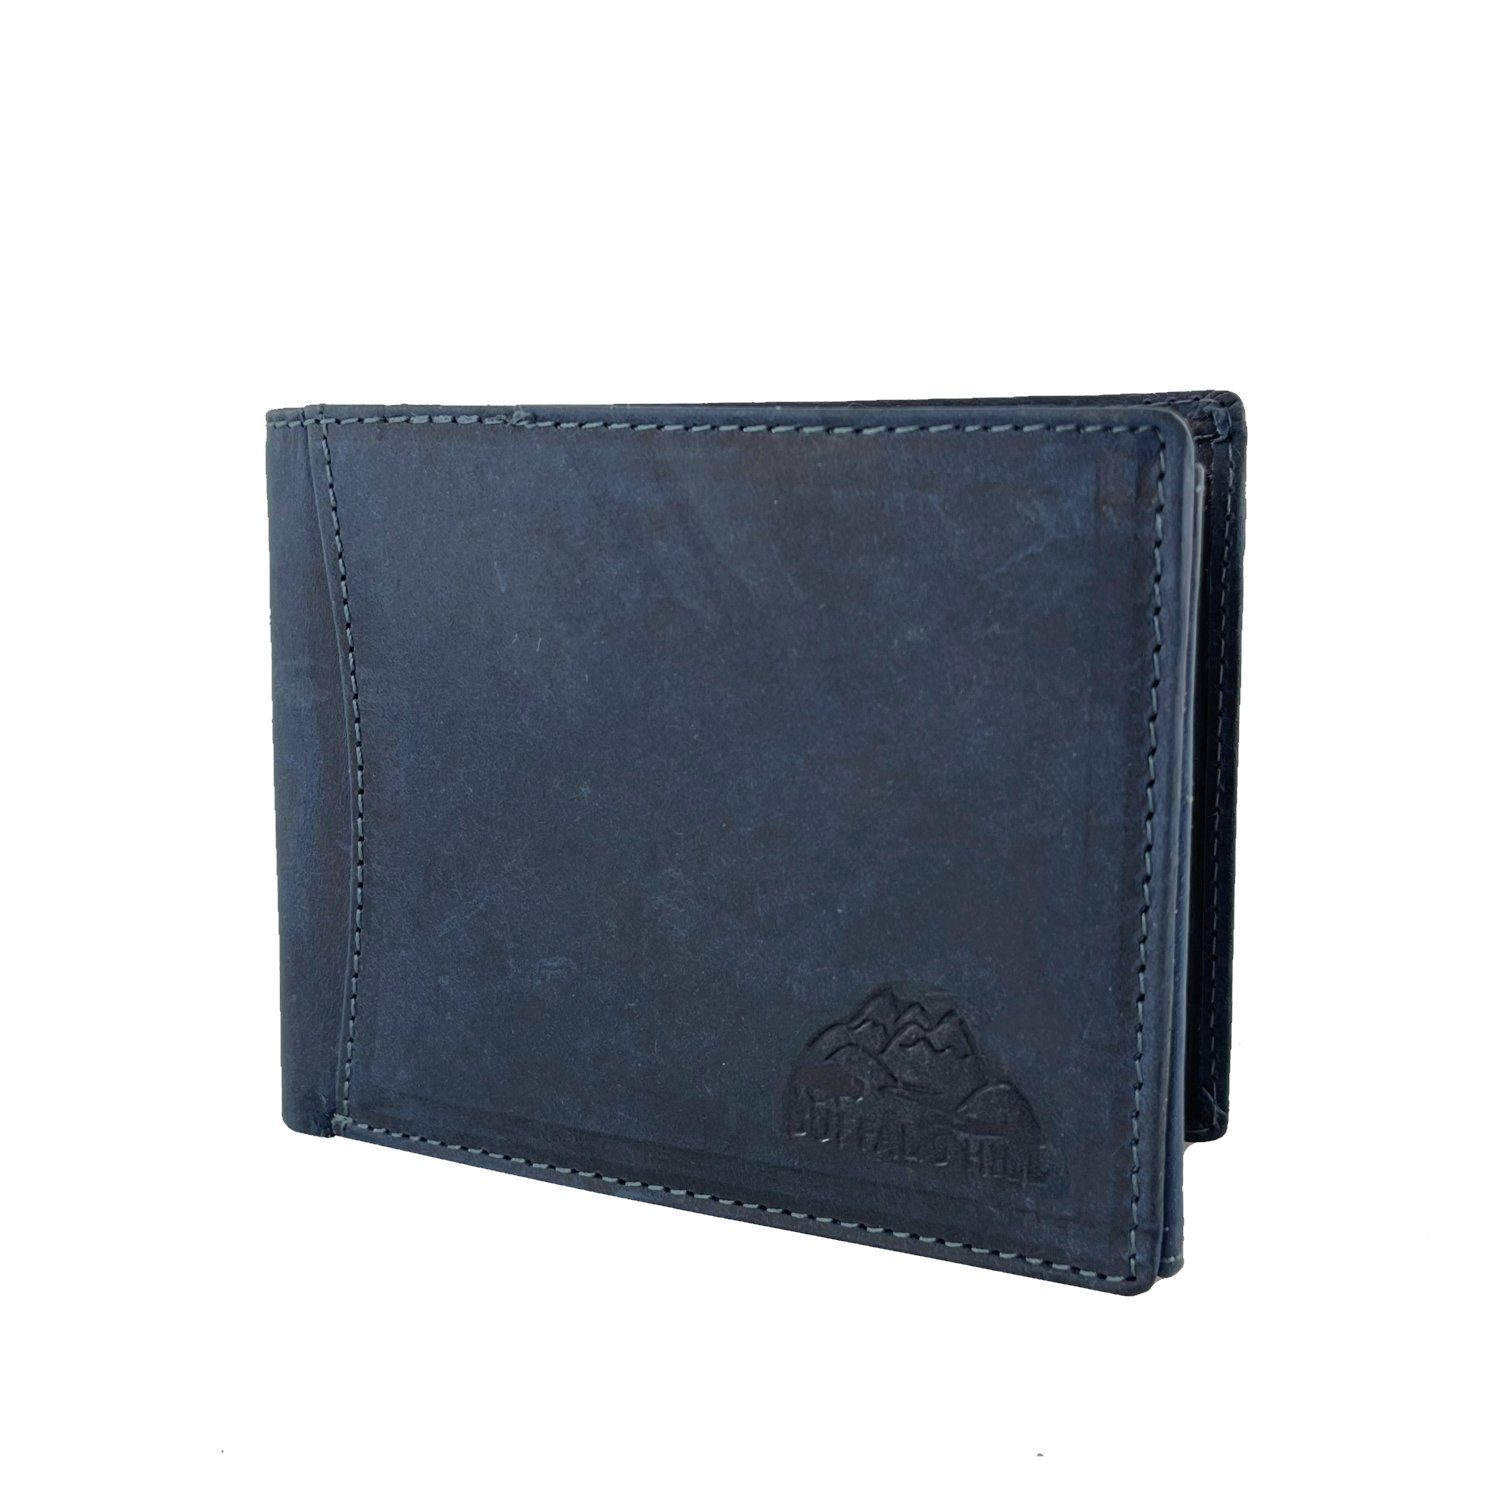 Wallet L&B elegantes 8 in Büffelleder Blau Kartenfächern integrierter im Portemonnaie, Querformat mit Geldbörse RFID-Schutz,